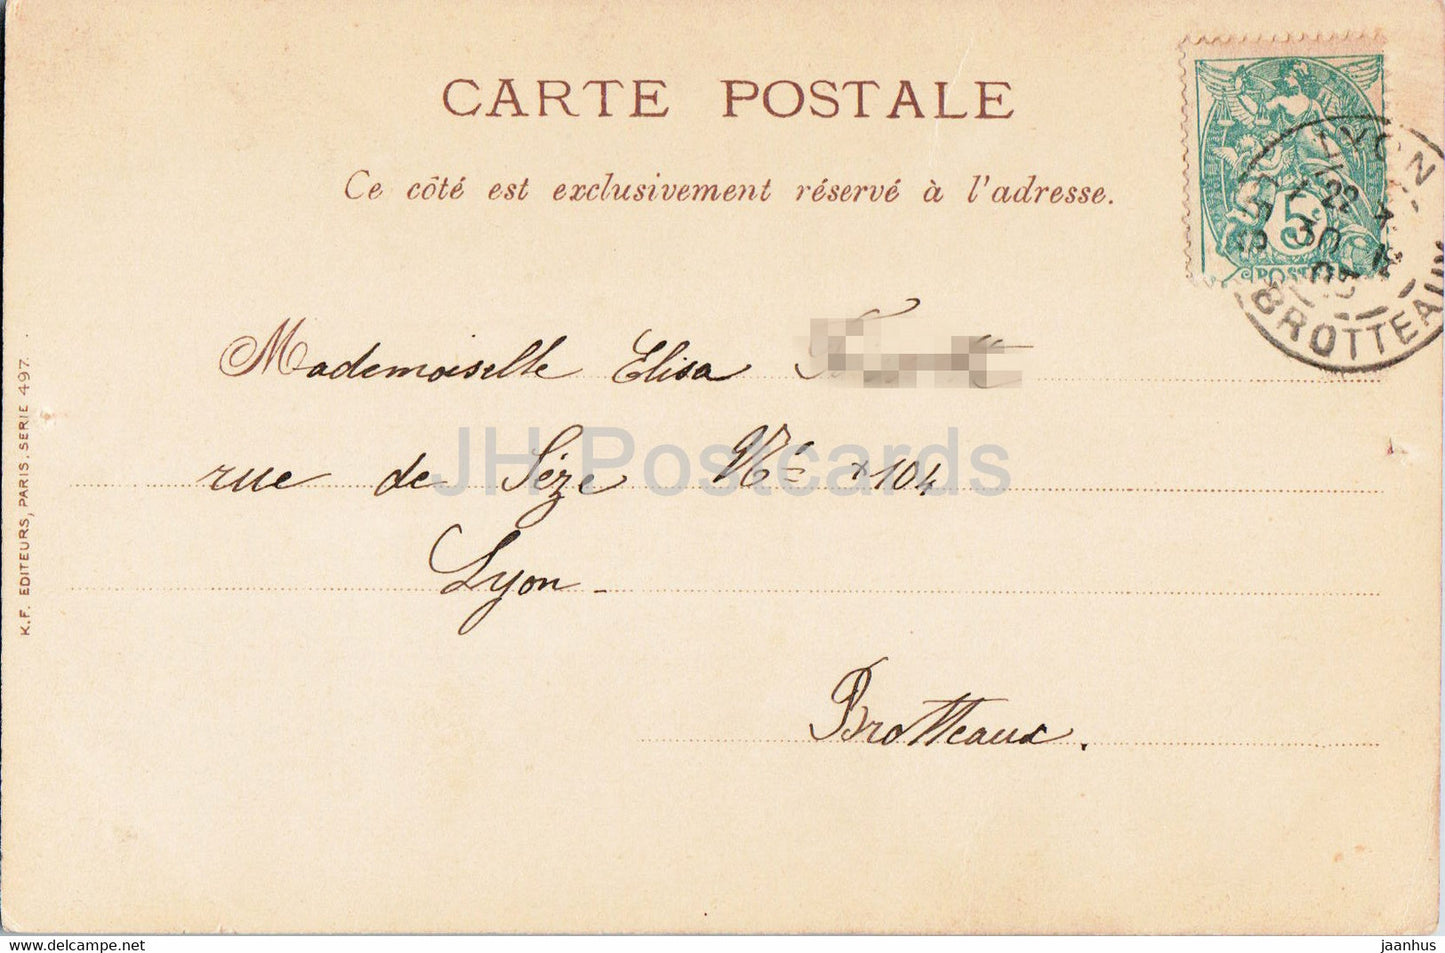 Carte de voeux anniversaire - Meilleurs voeux - illustration - fleurs bleues - Série 497 - carte postale ancienne - 1905 - France - occasion